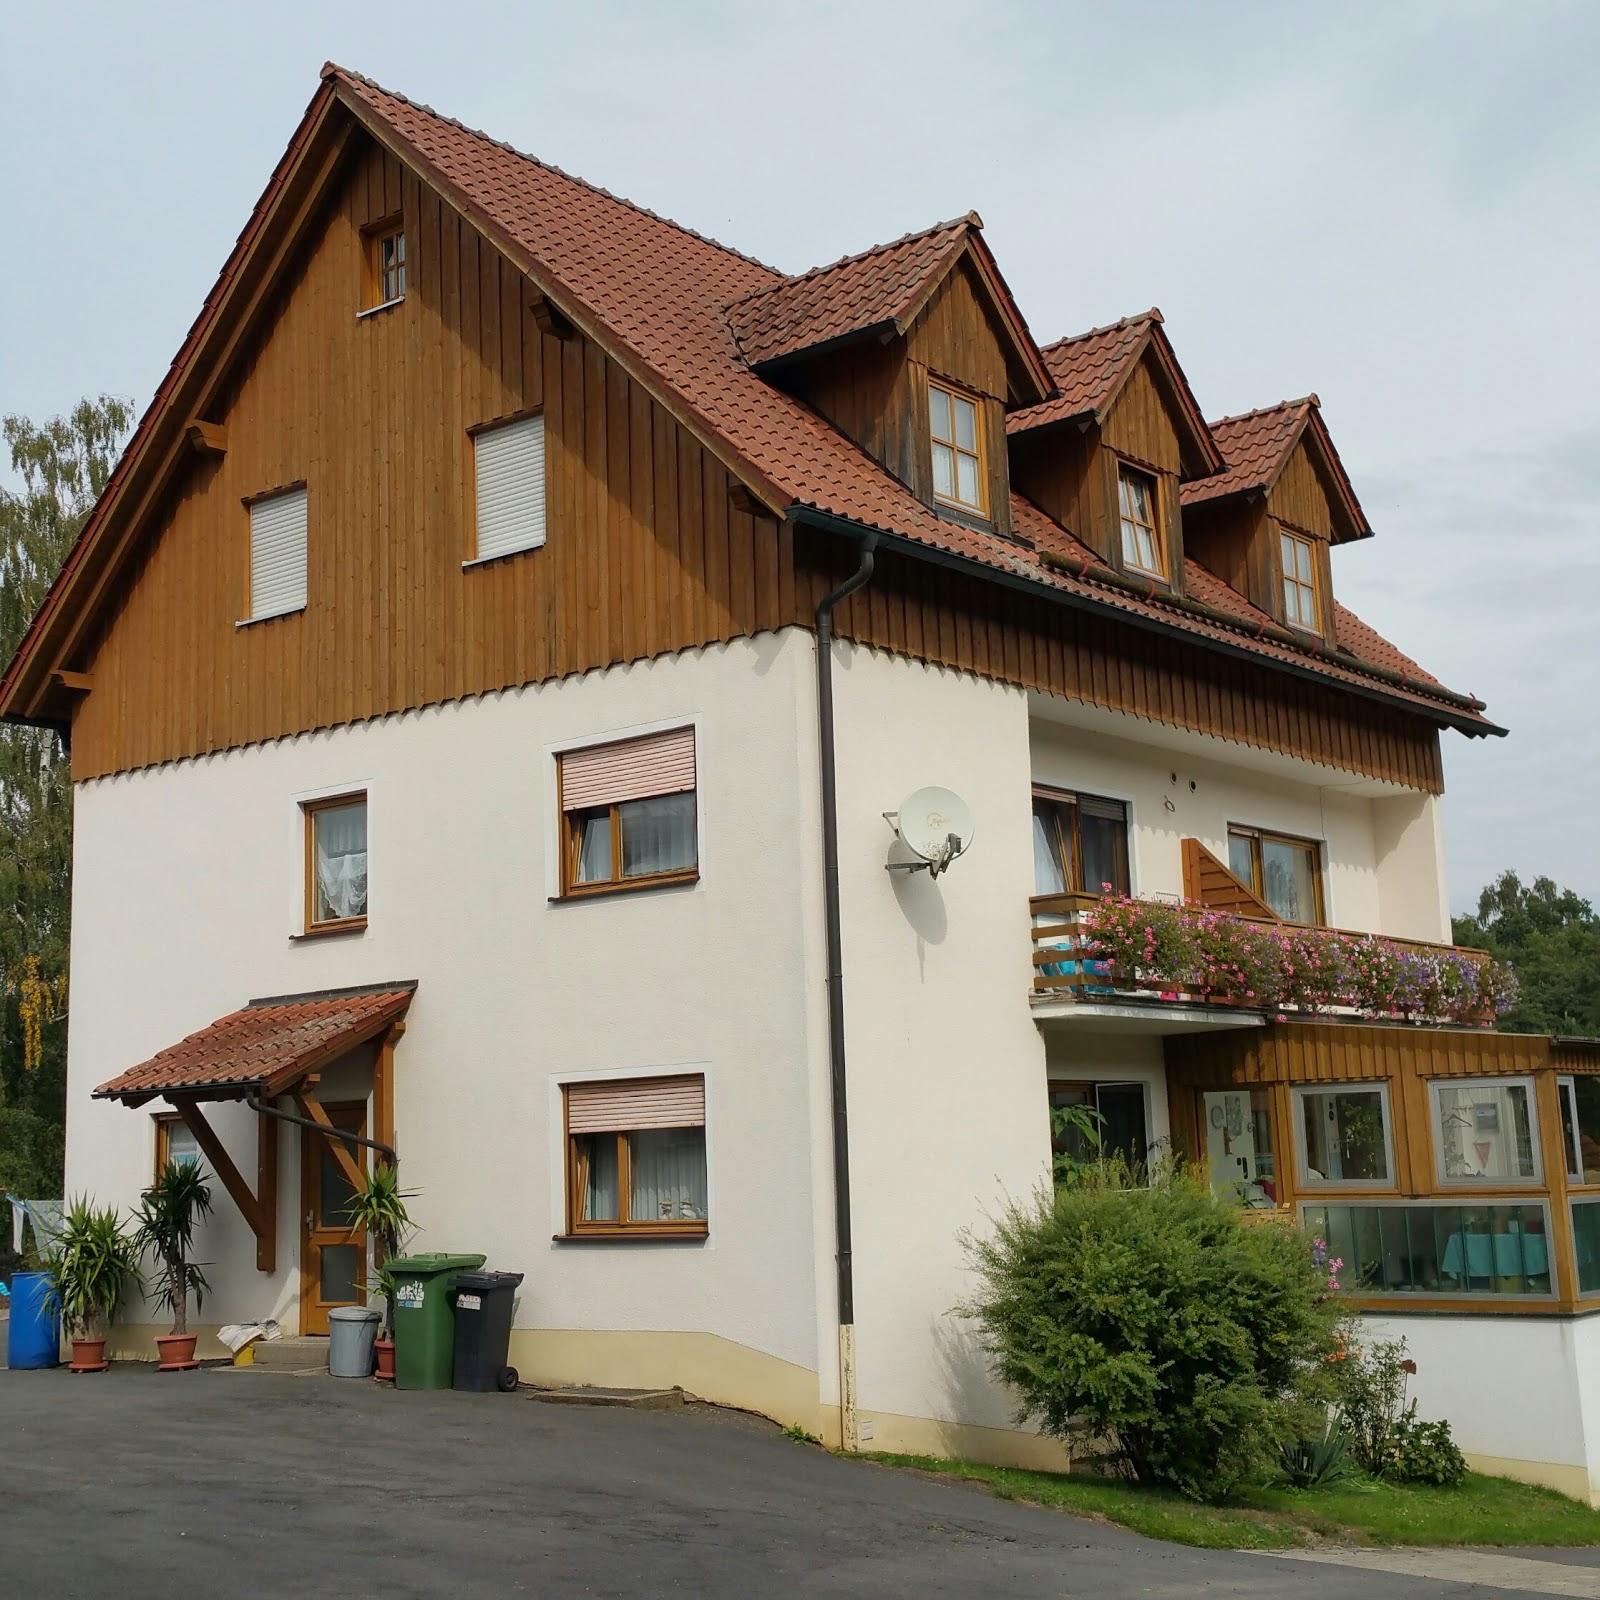 Restaurant "Pension Schnablhof" in Neualbenreuth